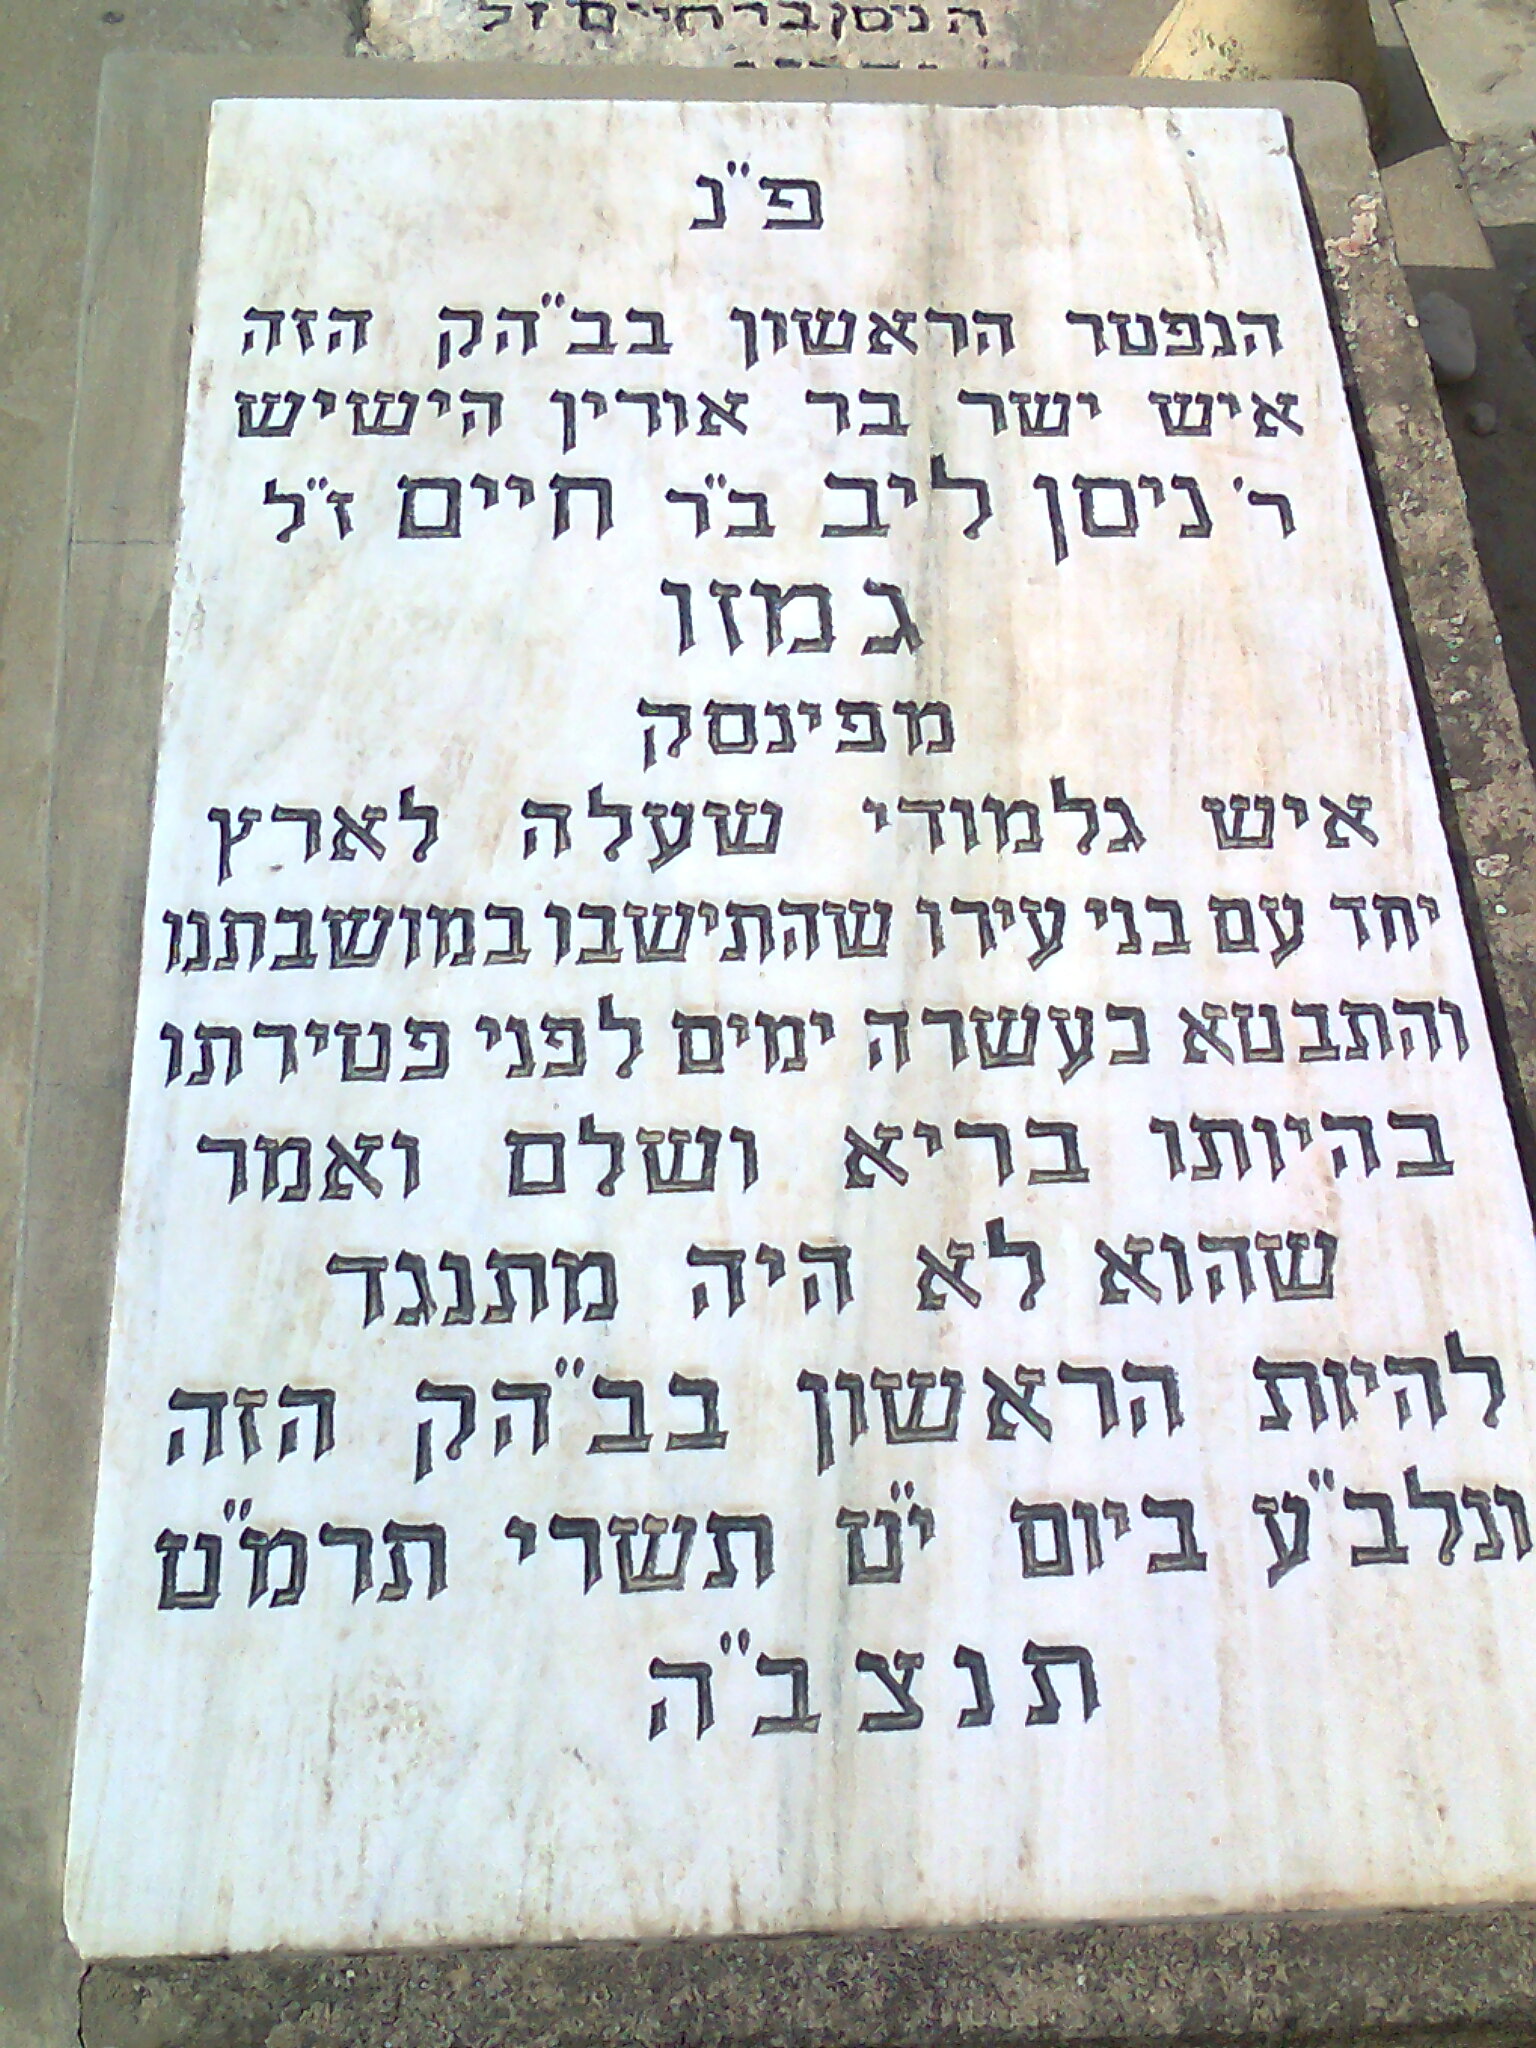 ברית כרותה- תמונה מהקבר בבית הקברות סגולה בפתח תקוה.jpg